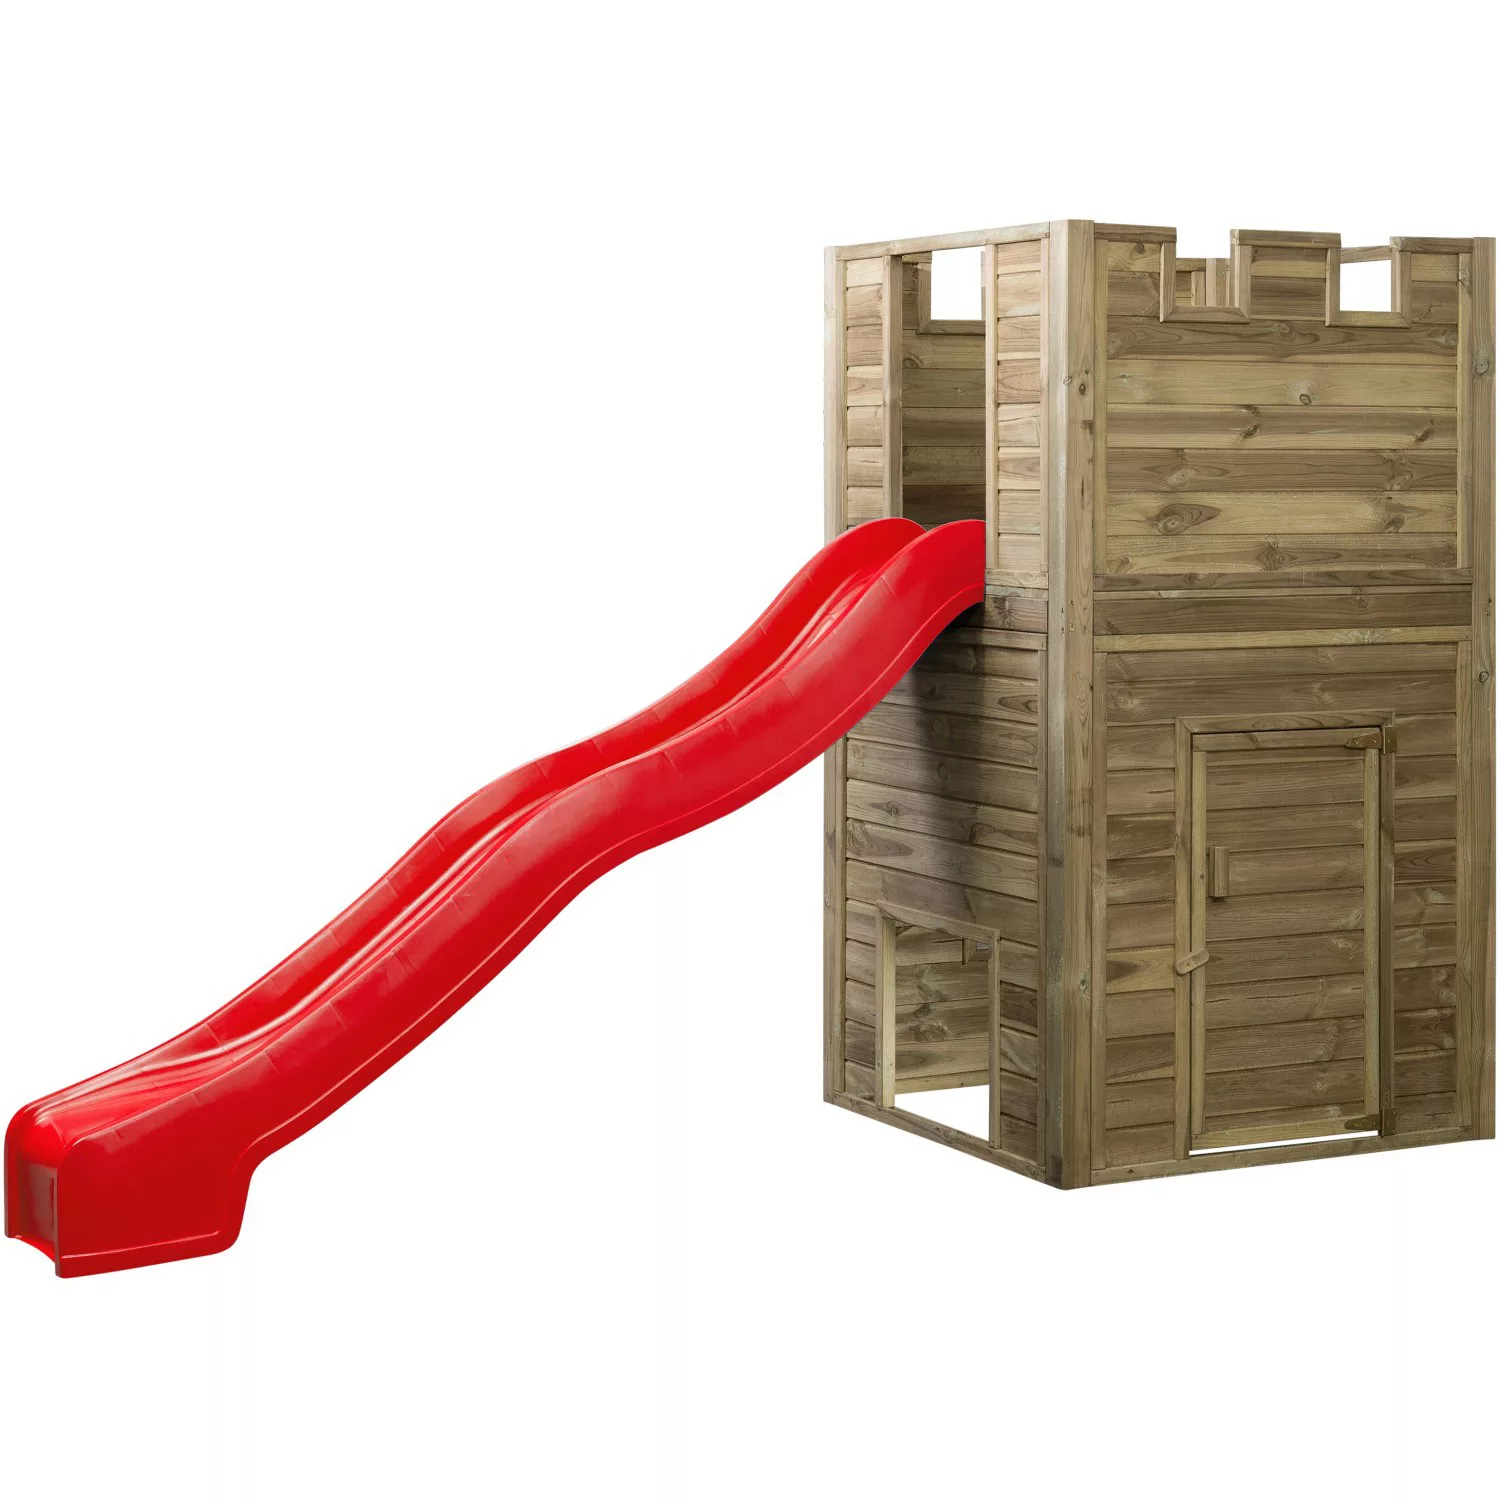 SwingKing Spielturm Lancelot mit Rutsche Rot 110 cm x 110 cm x 195 cm günstig online kaufen